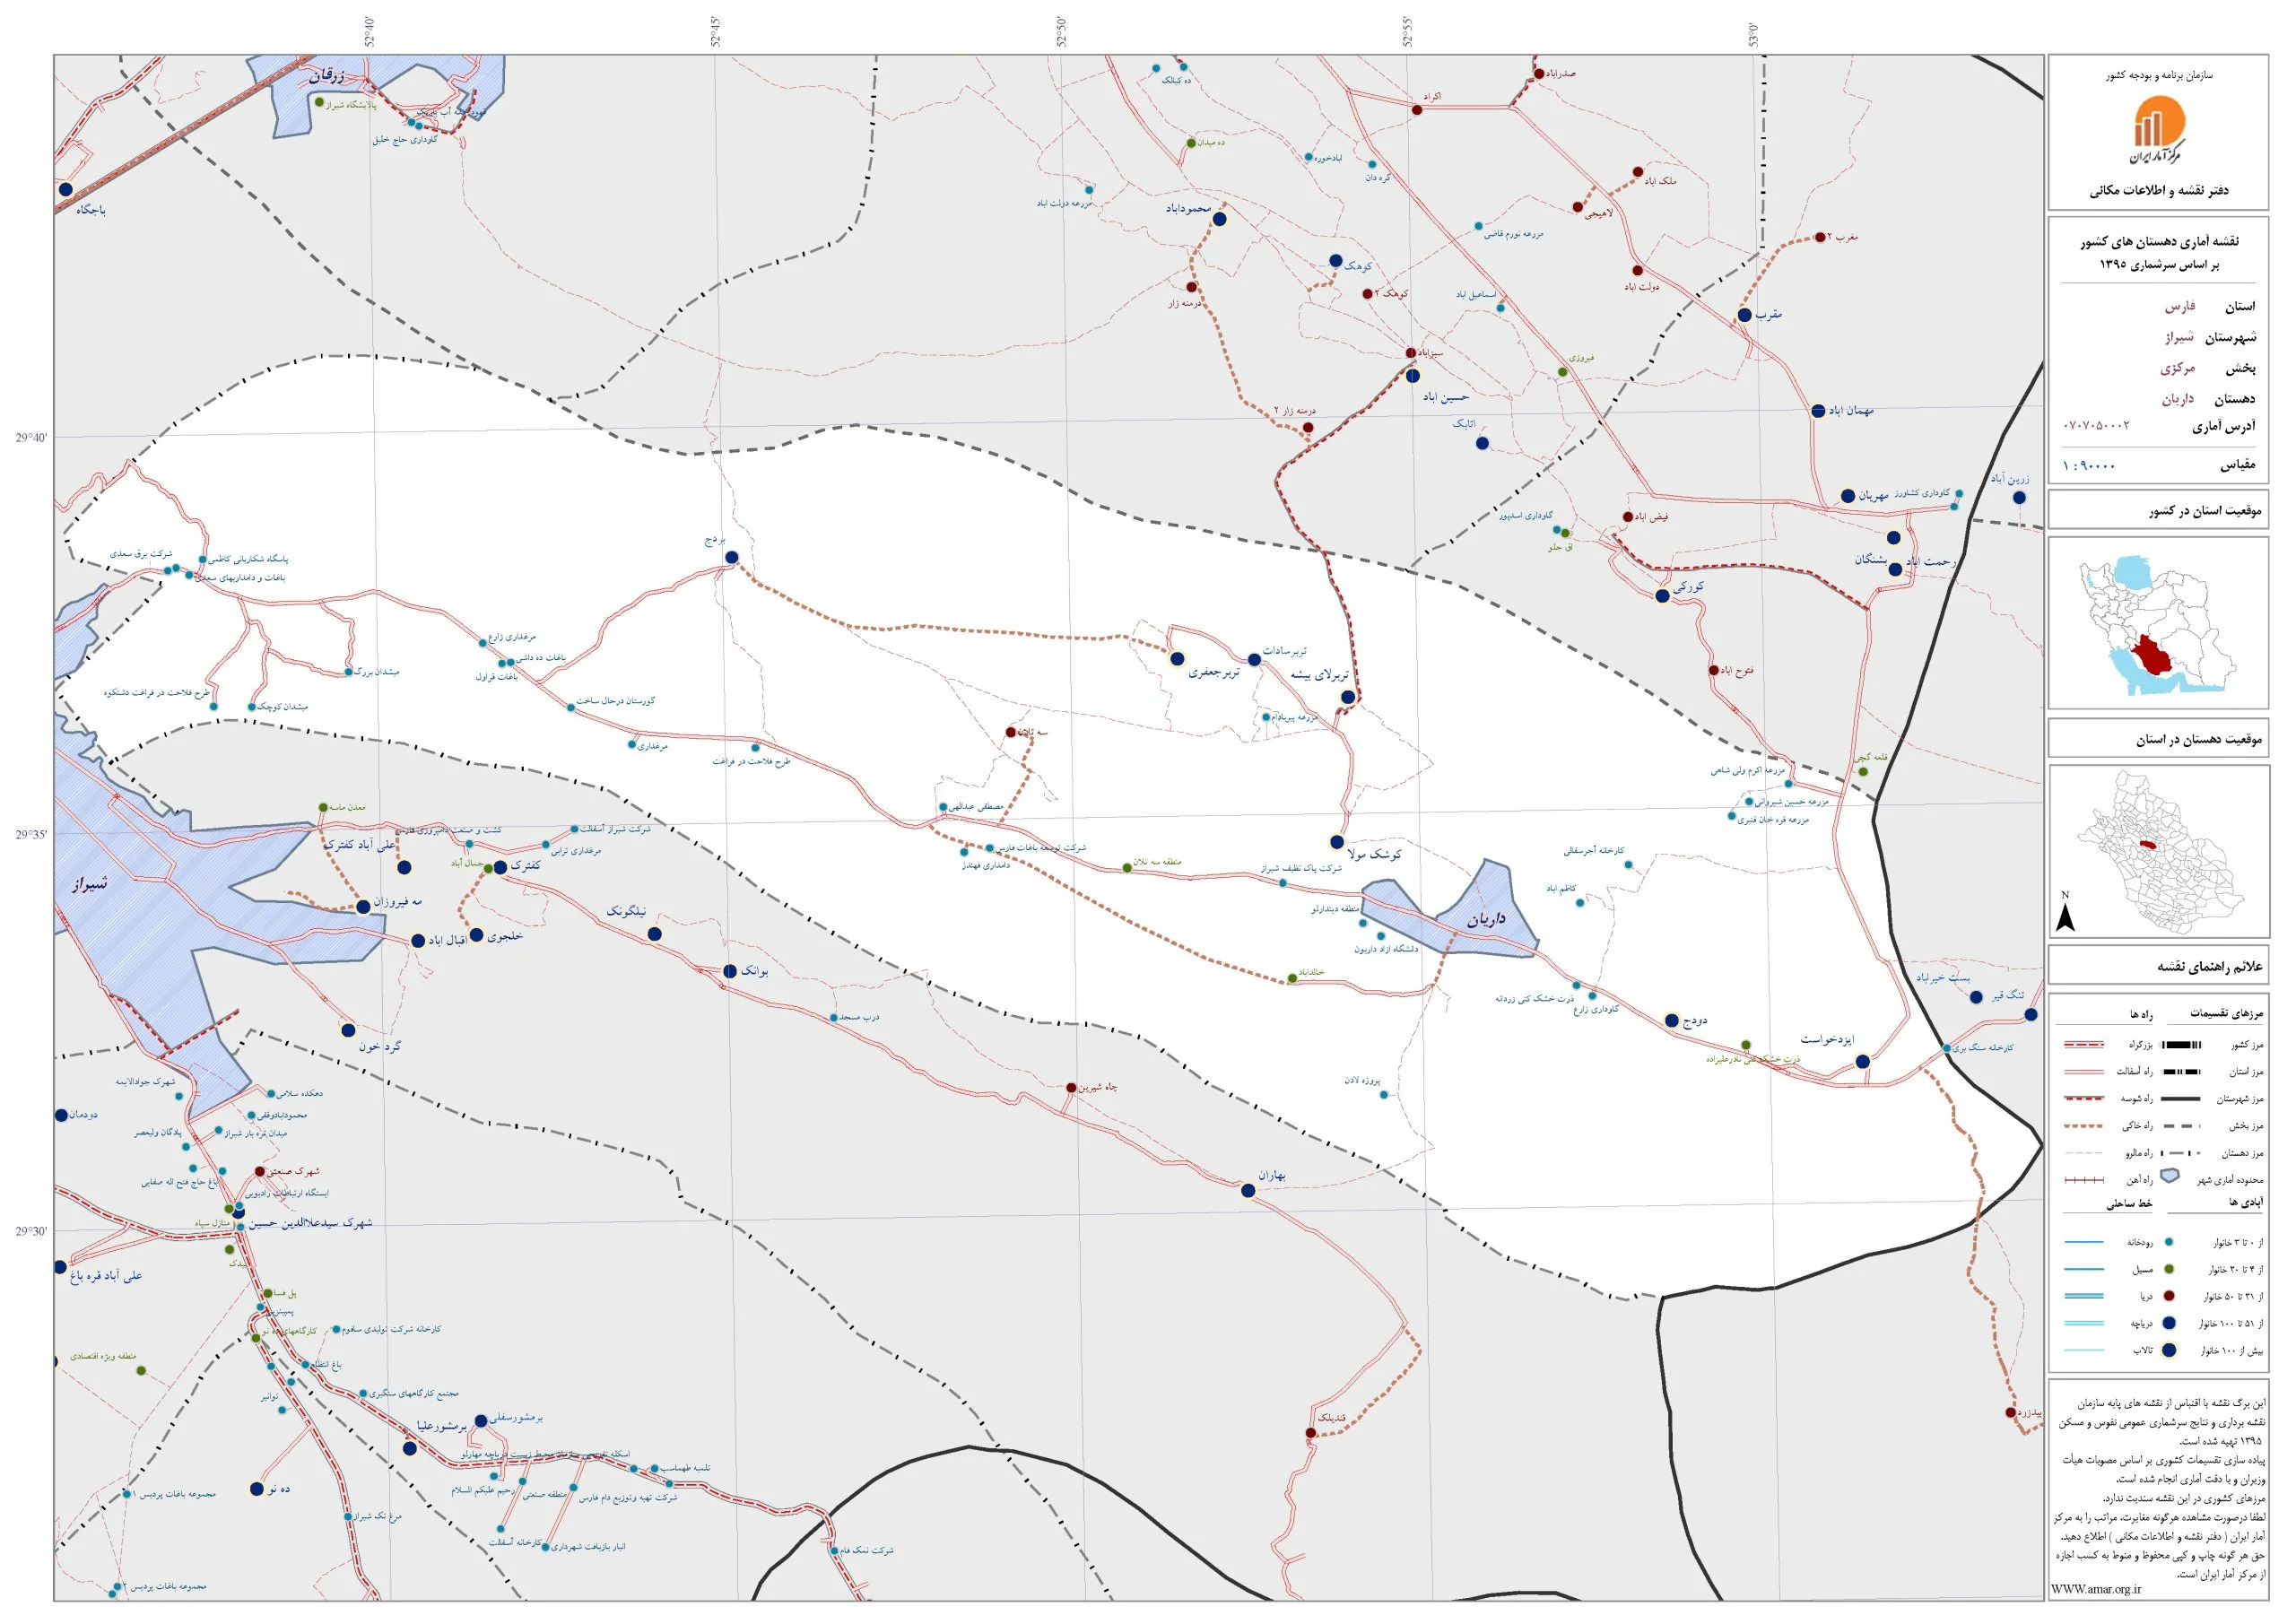 نمونه نقشه پکیج نقشه های روستاهای ایران سال های 85 و 90 و 95